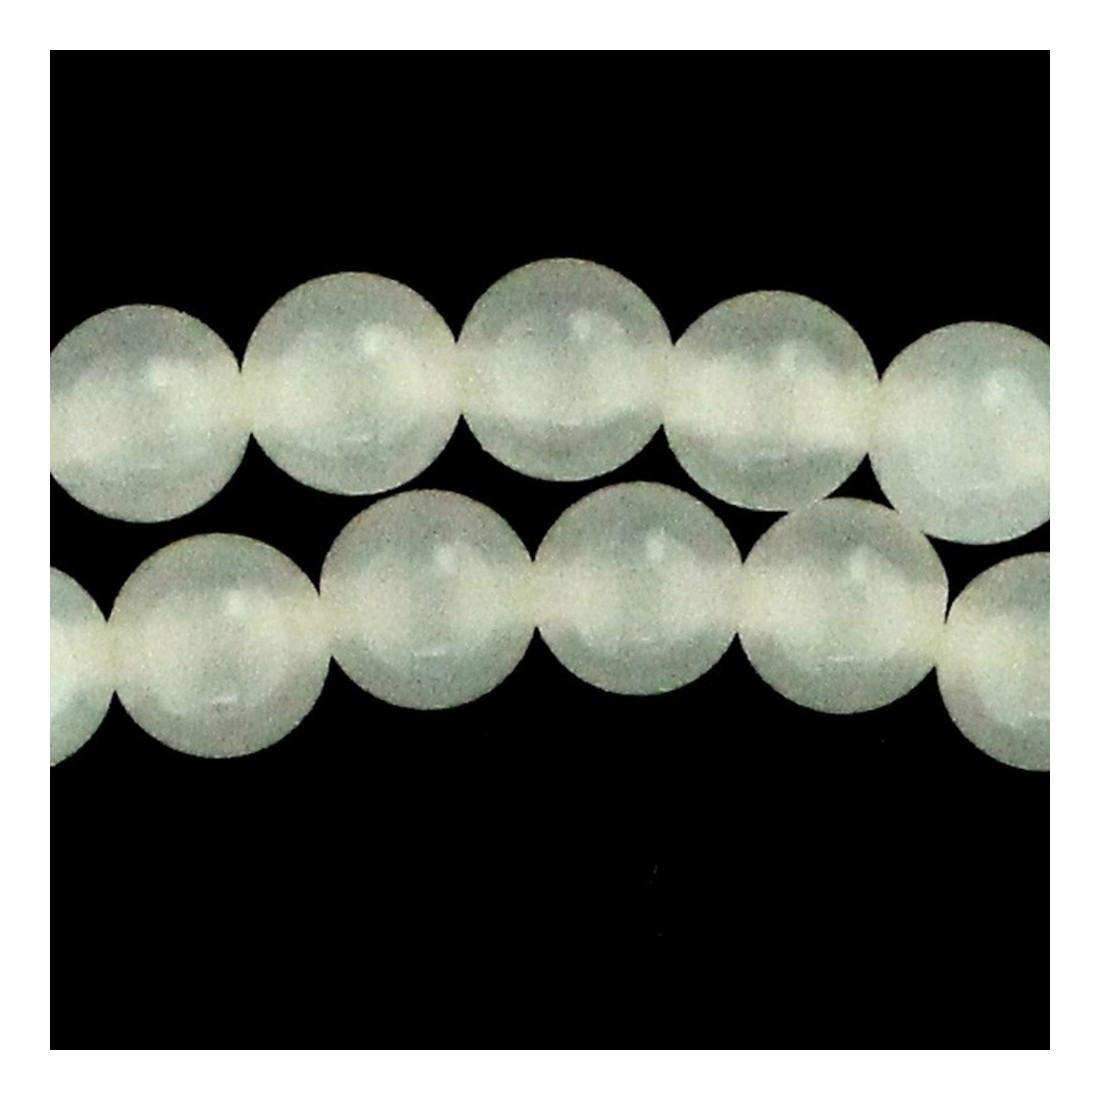 Fil de 62 perles rondes 6mm 6 mm en agate blanche